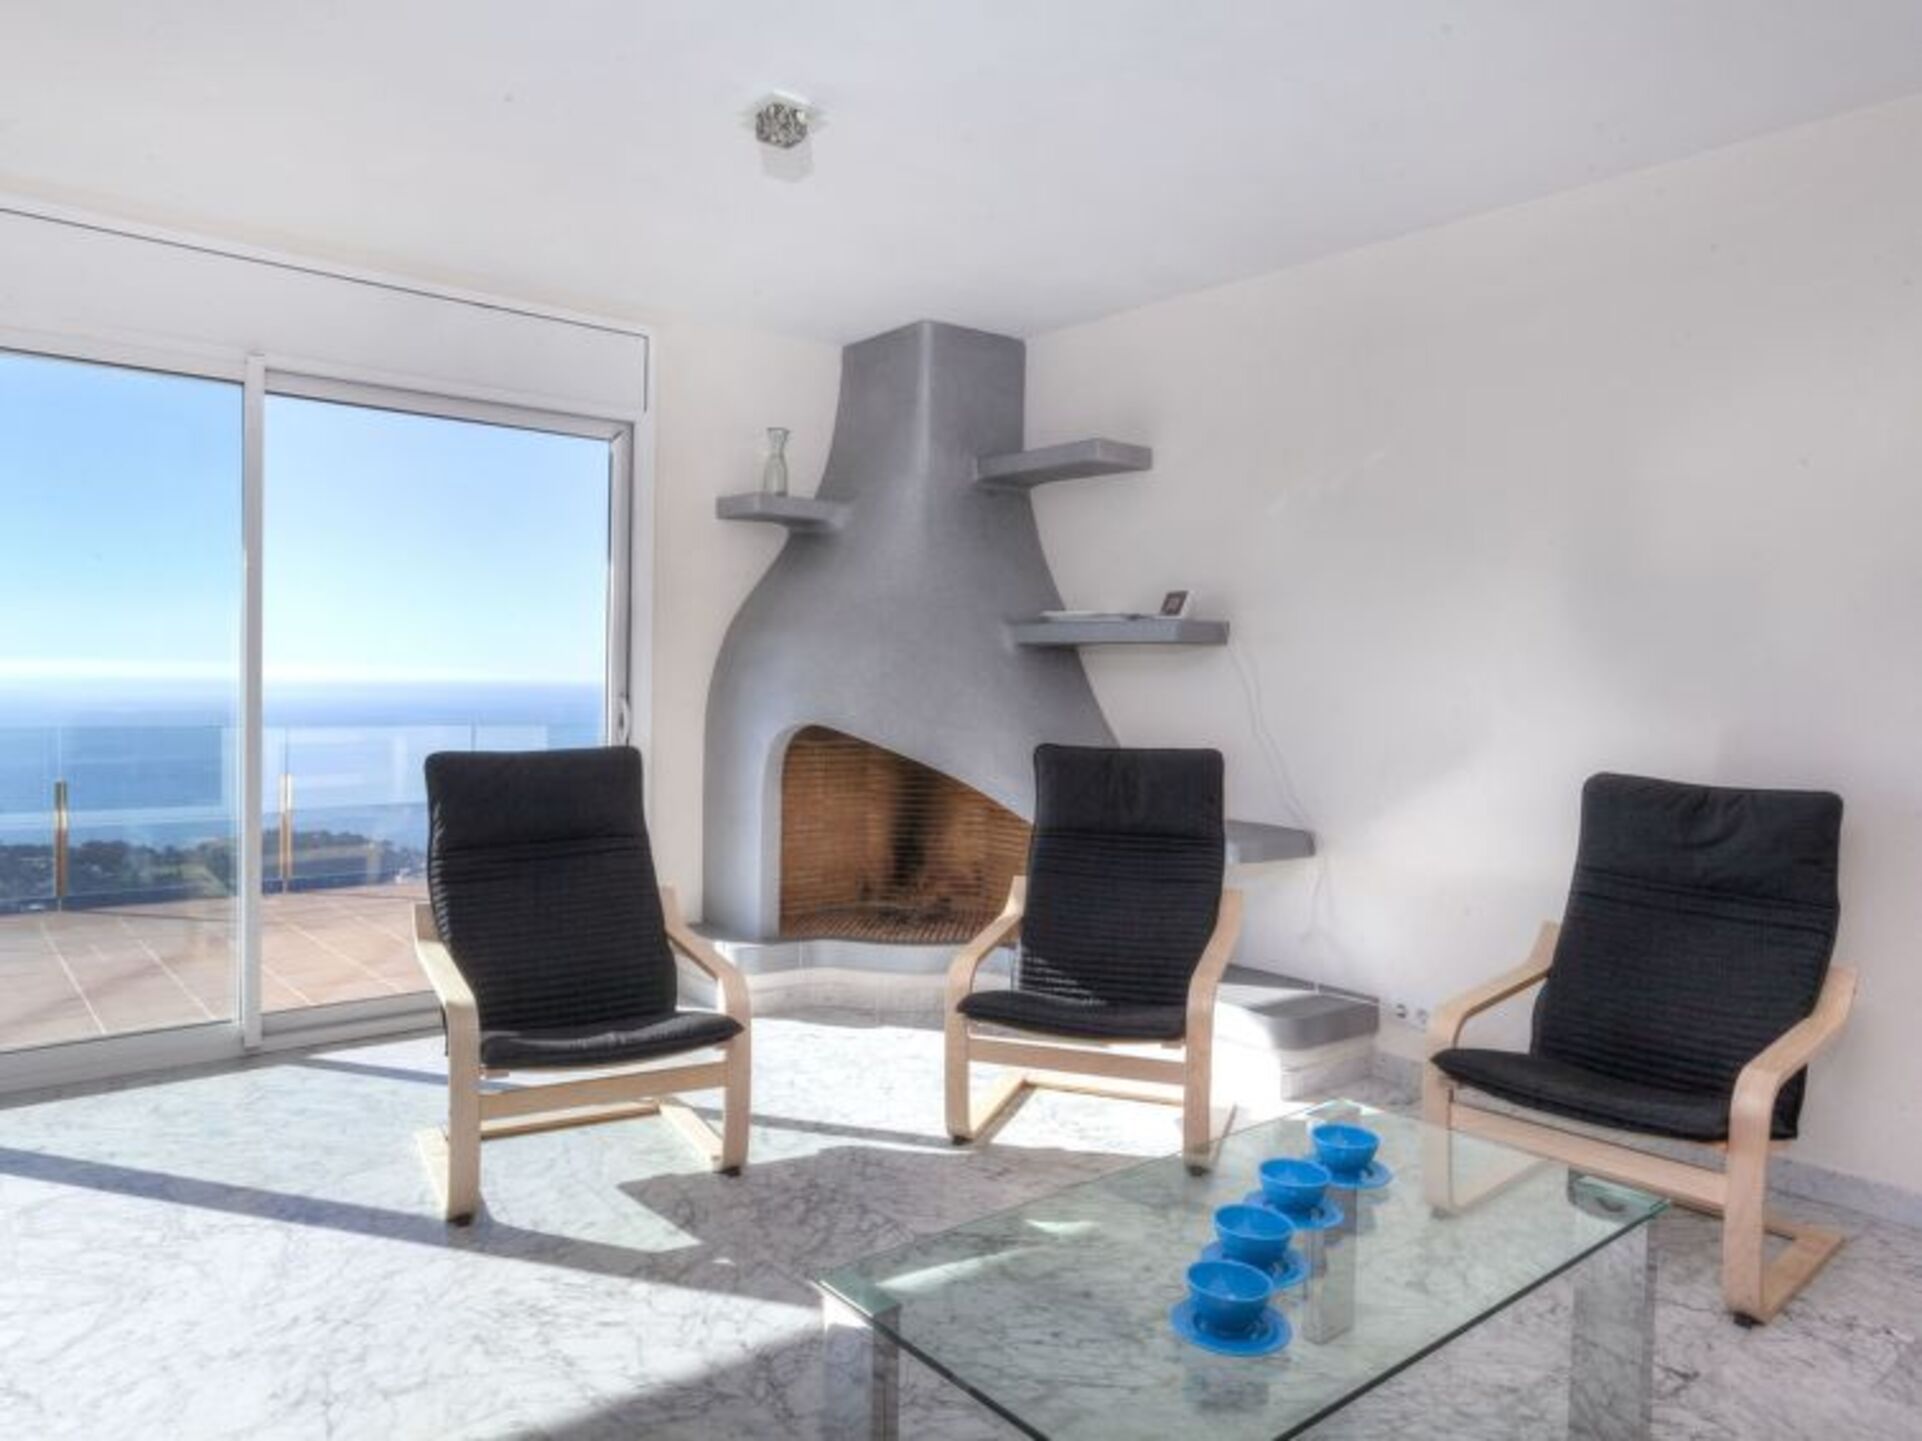 Property Image 2 - The Ultimate Villa in an Ideal Location, Costa Brava Villa 1028